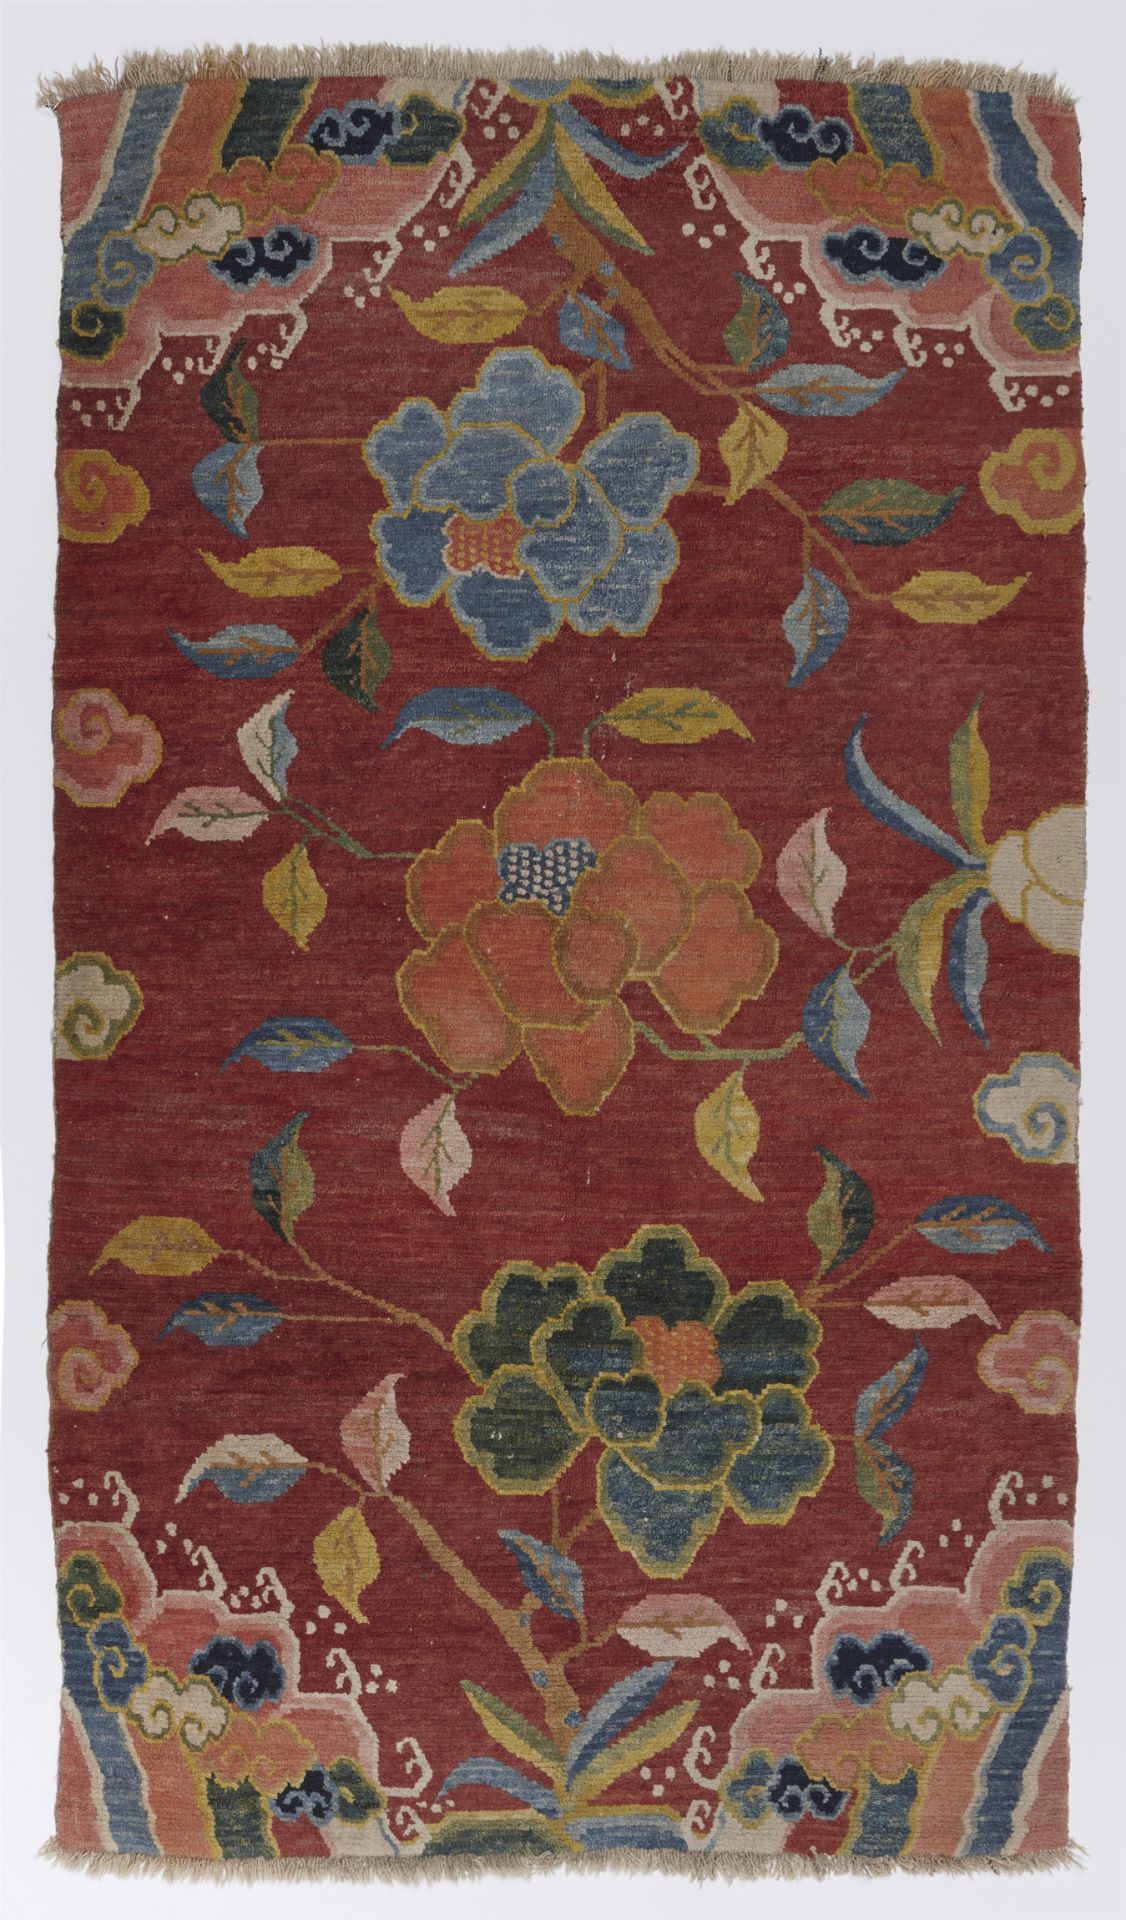 A wool Khaden rug. Tibet, around 1900